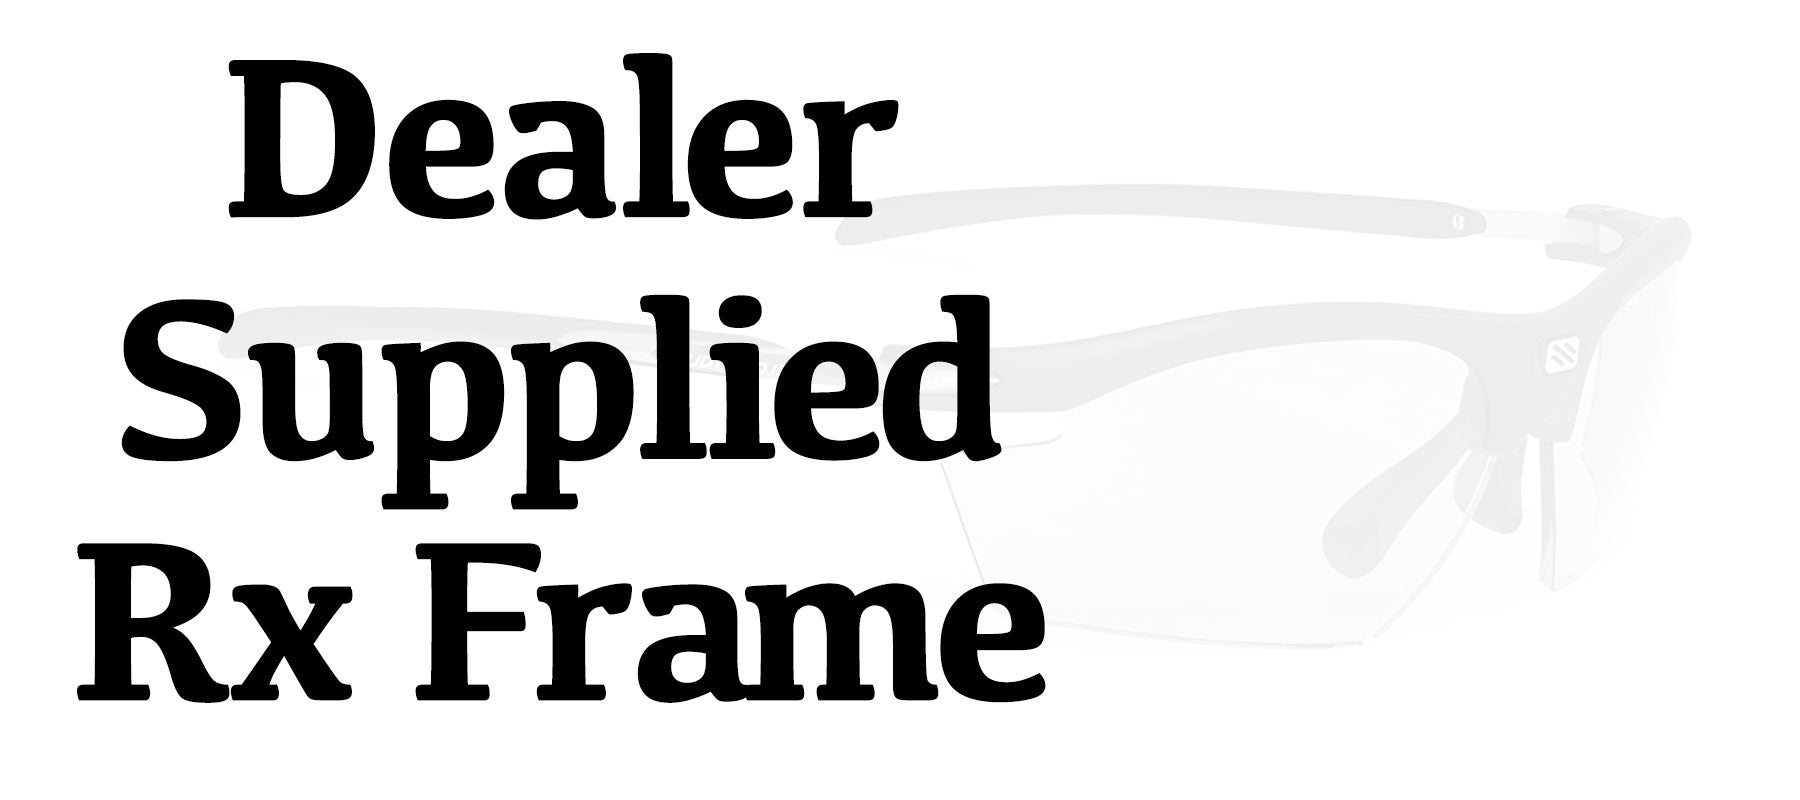 Dealer Supplied Rx Frame